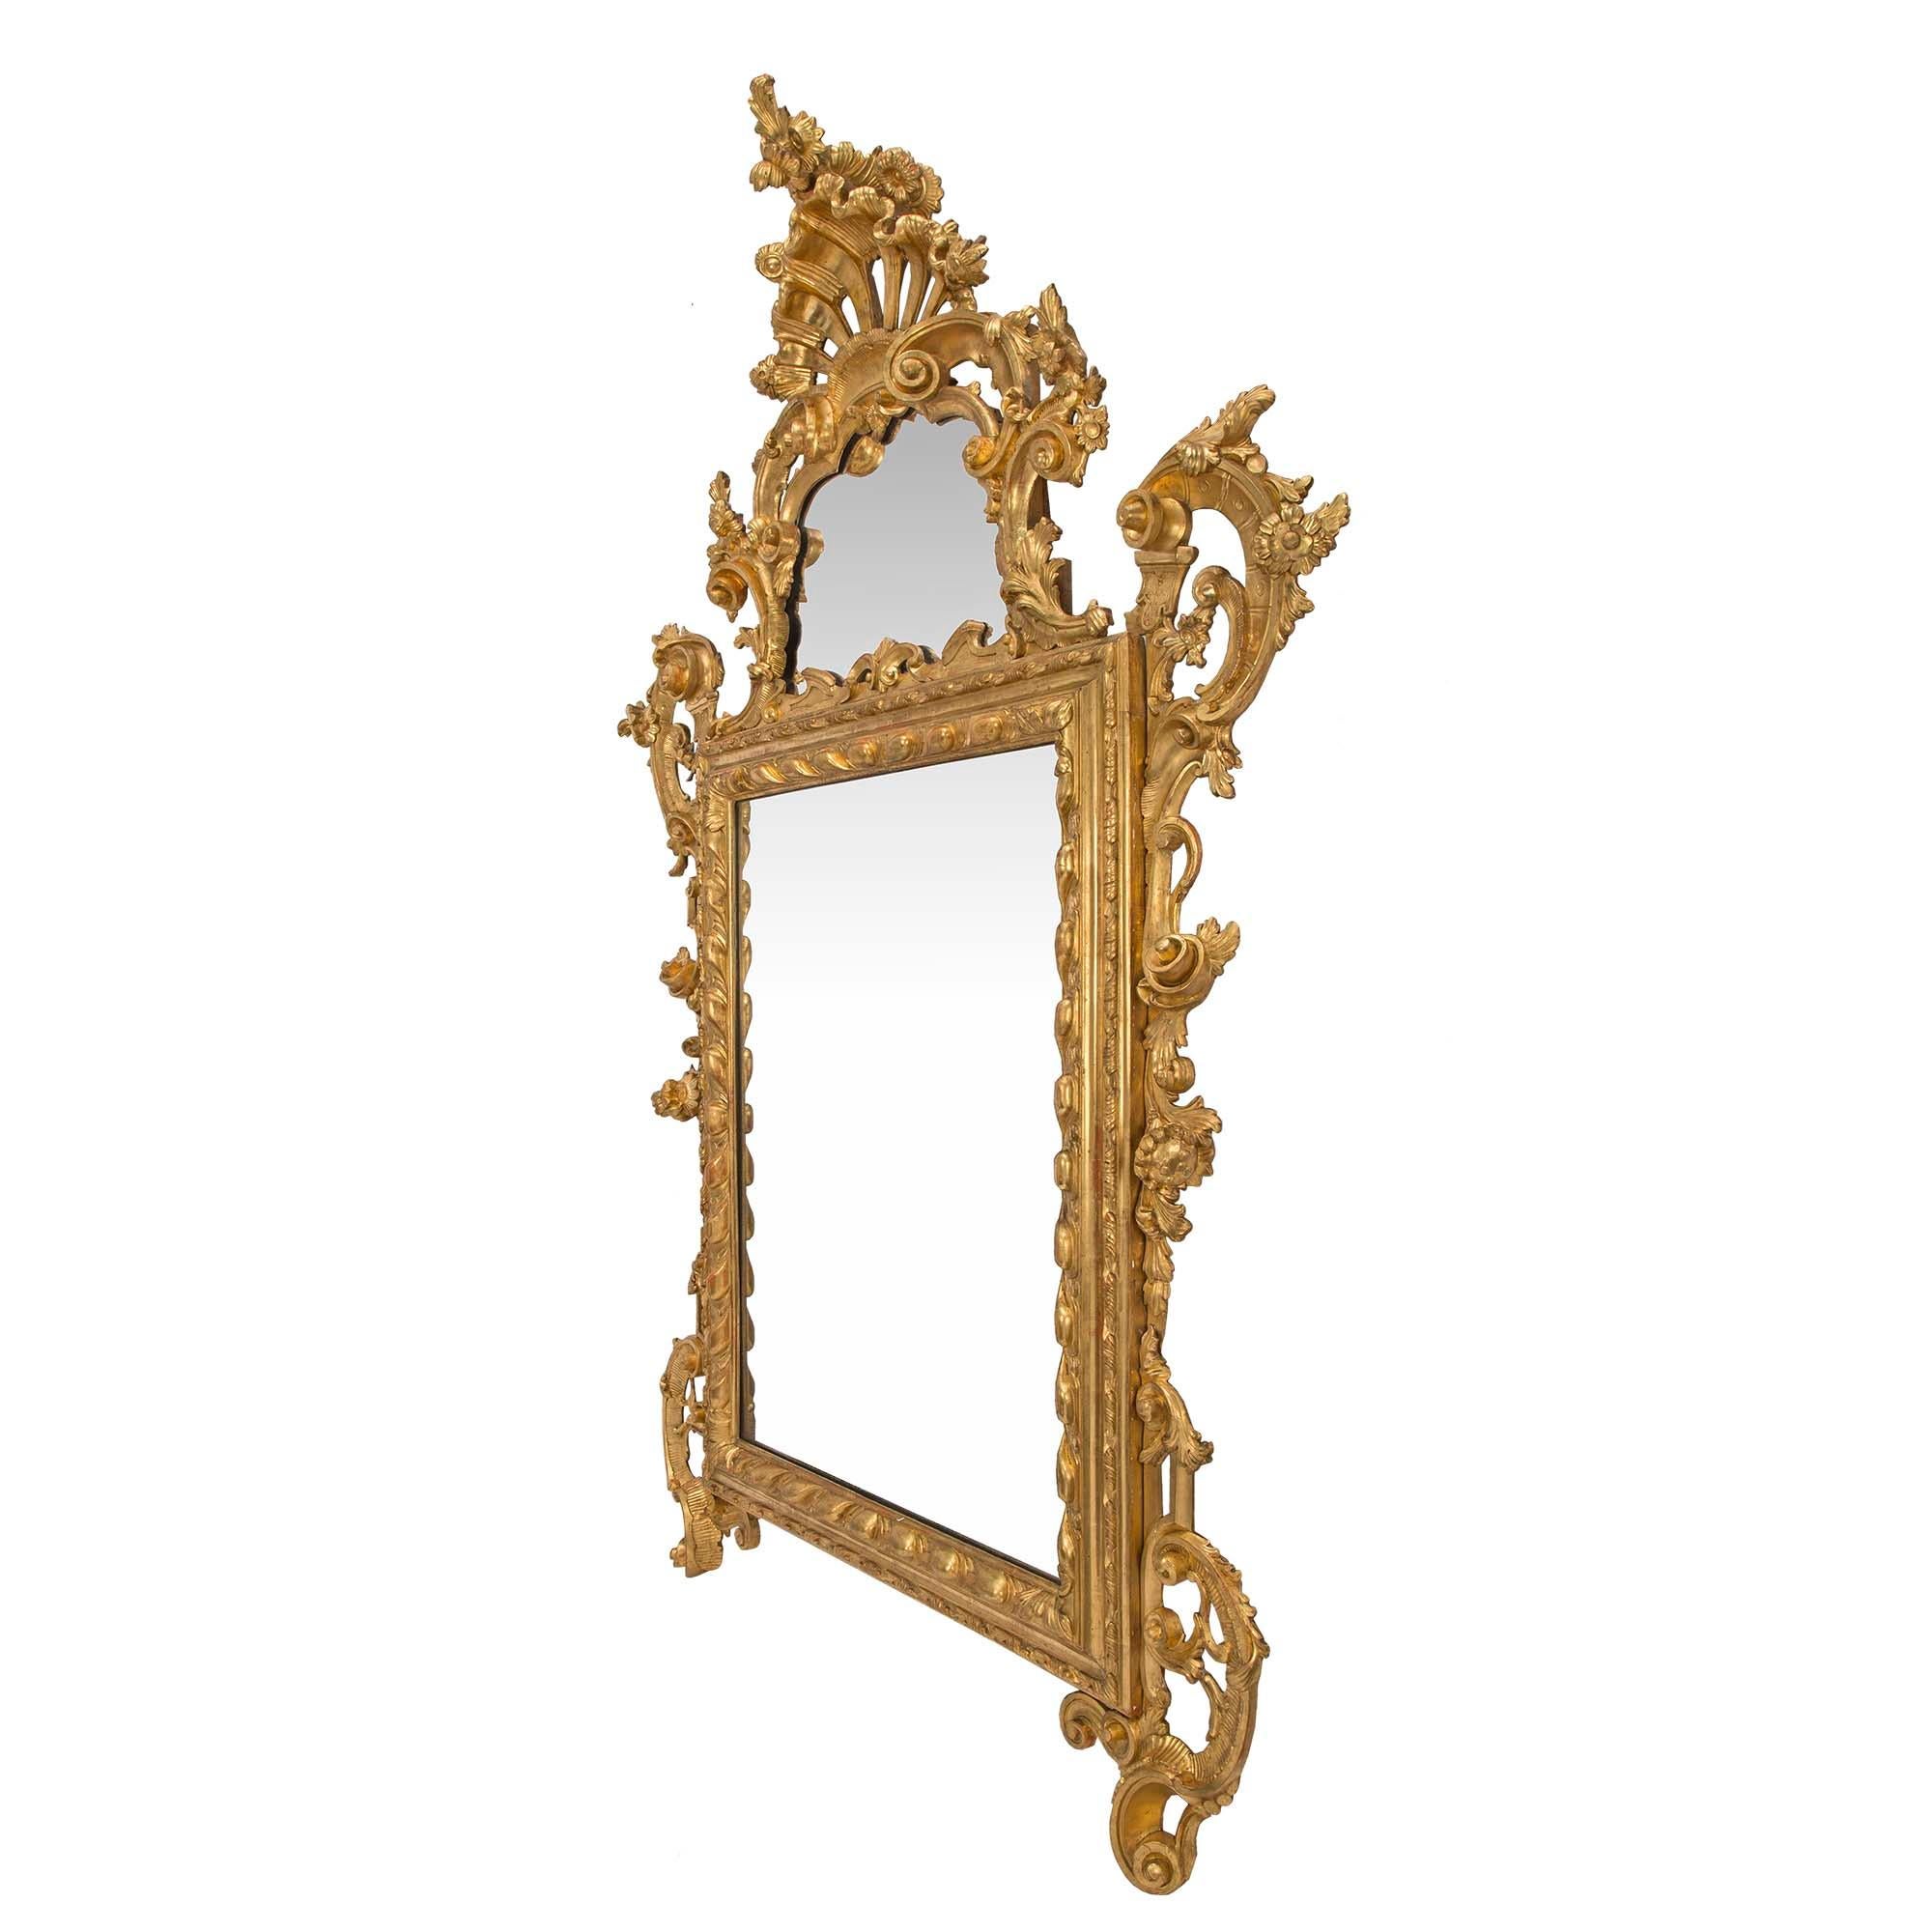 Superbe miroir italien en bois doré vénitien du XVIIIe siècle. Le miroir est décoré d'opulentes volutes feuillues de chaque côté du cadre central rectangulaire en bois de gitane. Une plaque de miroir supplémentaire est présentée sur la couronne